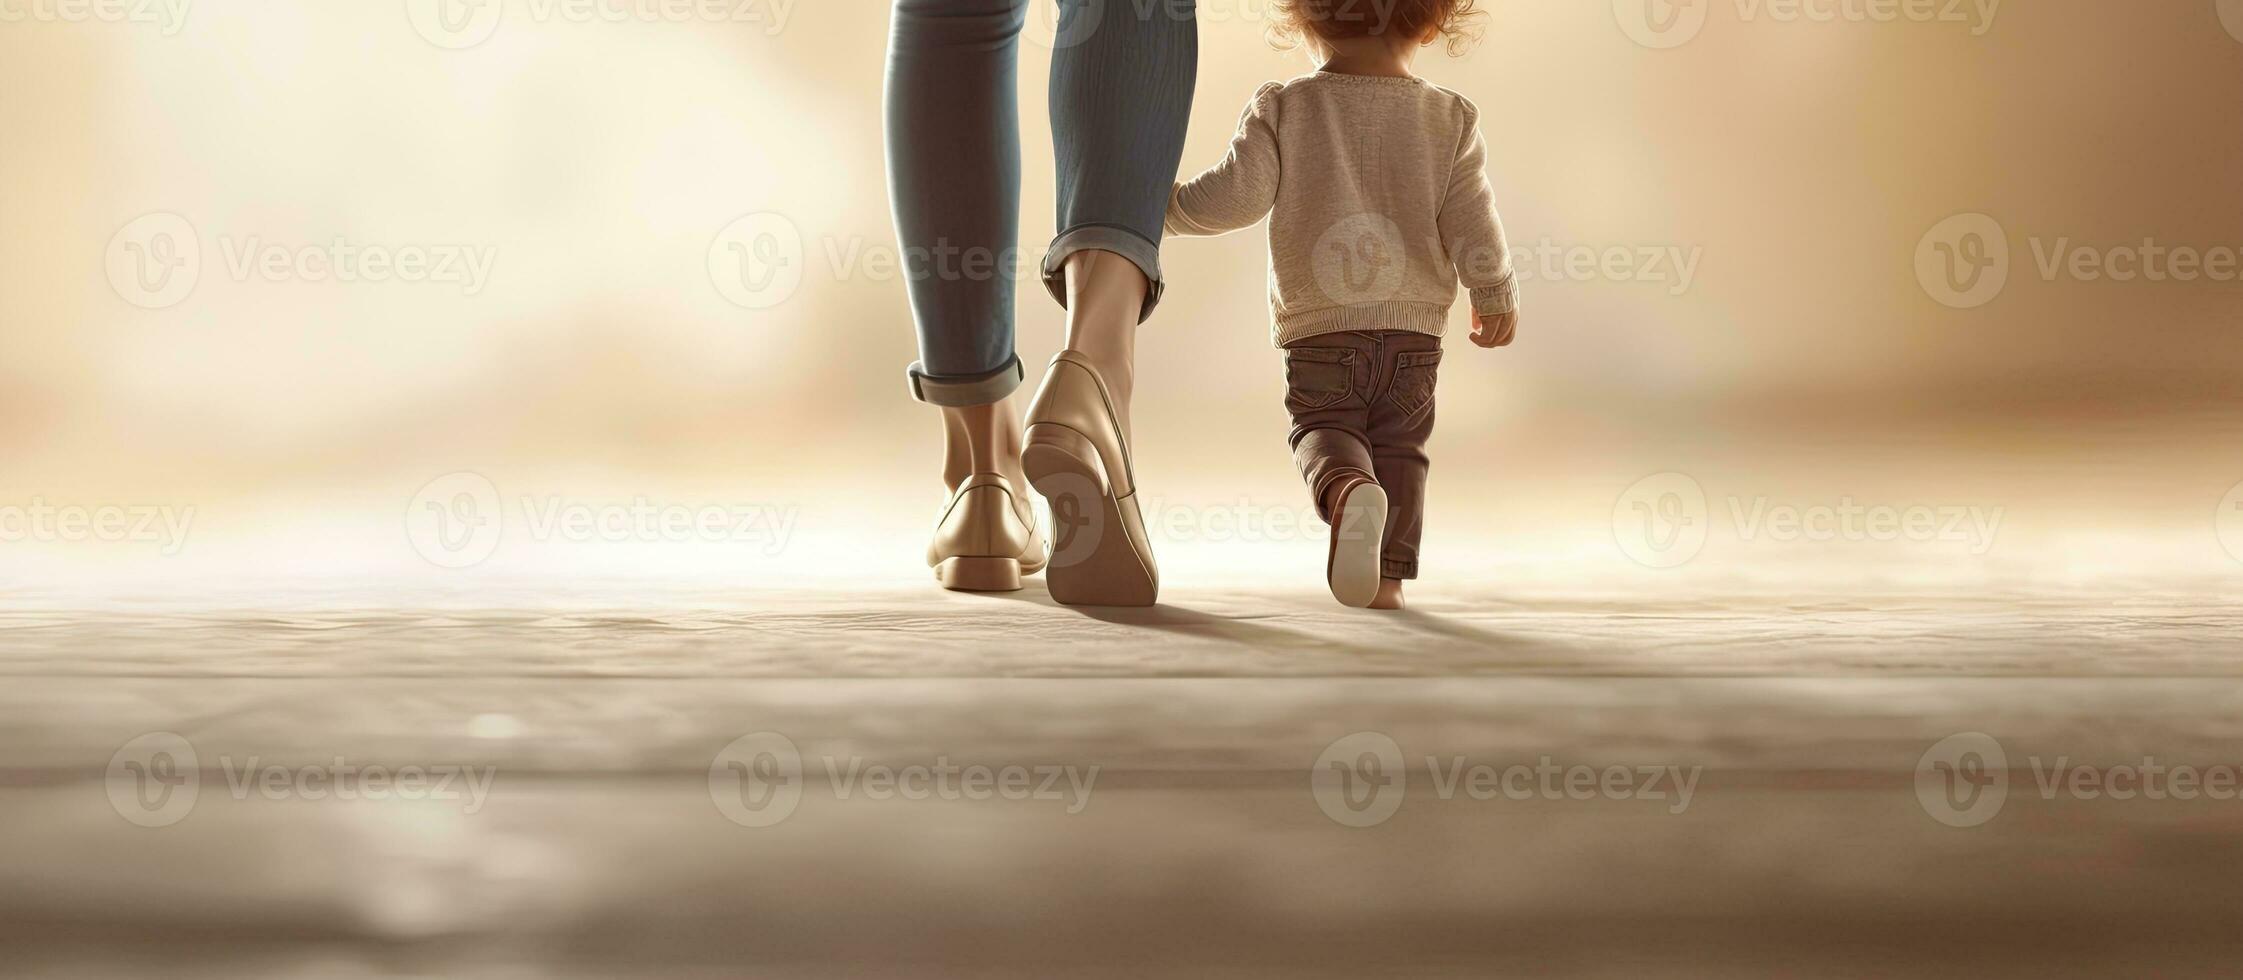 bebê em pé em mãe s pés Aprendendo para andar com Apoio, suporte foto